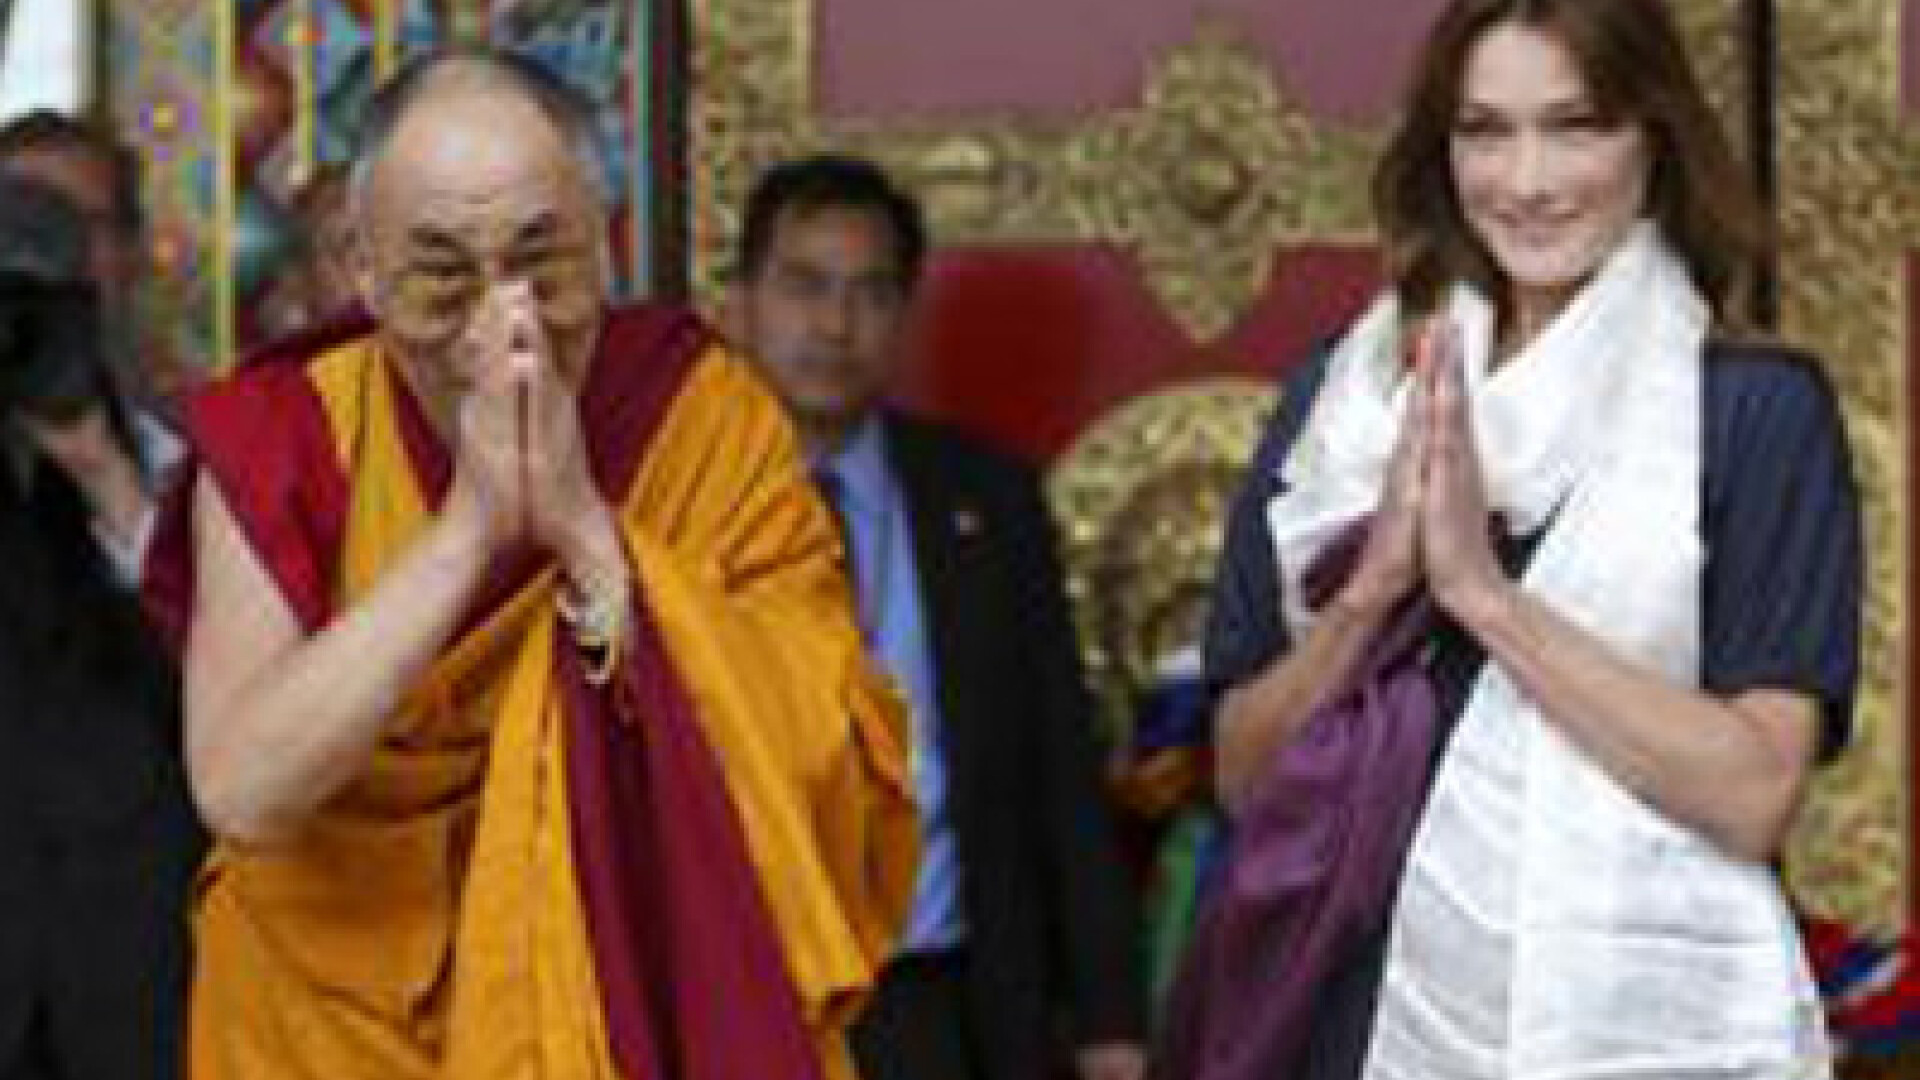 Carla Bruni Sarkozy s-a intalnit cu Dalai Lama